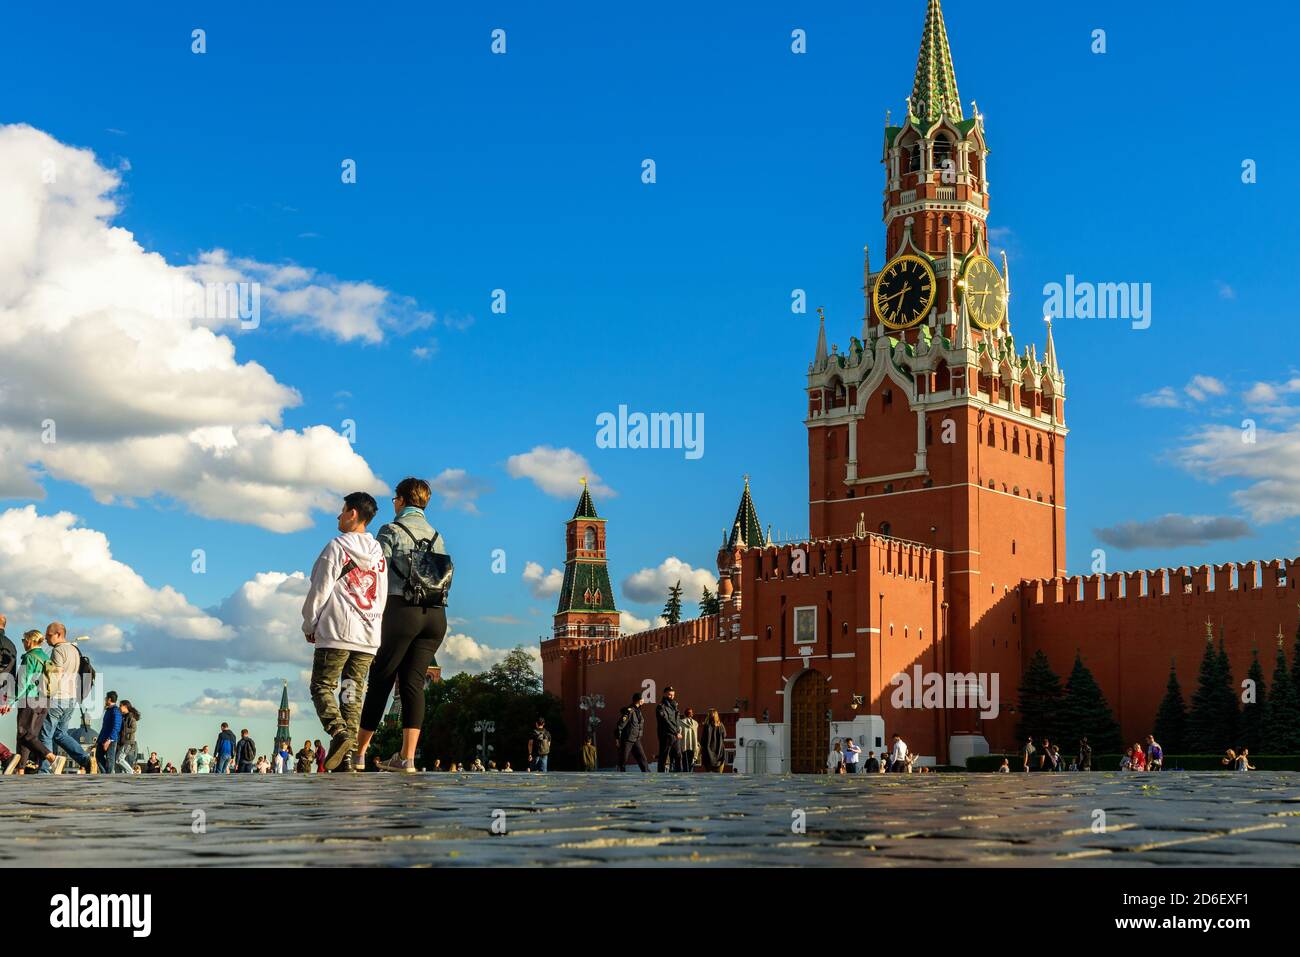 Moskau - 23. Juli 2020: Menschen gehen auf dem Roten Platz in Moskau, Russland. Schöne Aussicht auf den alten berühmten Moskauer Kreml im Sommer. Dieses Hotel ist ein Top-Touristenattraktion Stockfoto